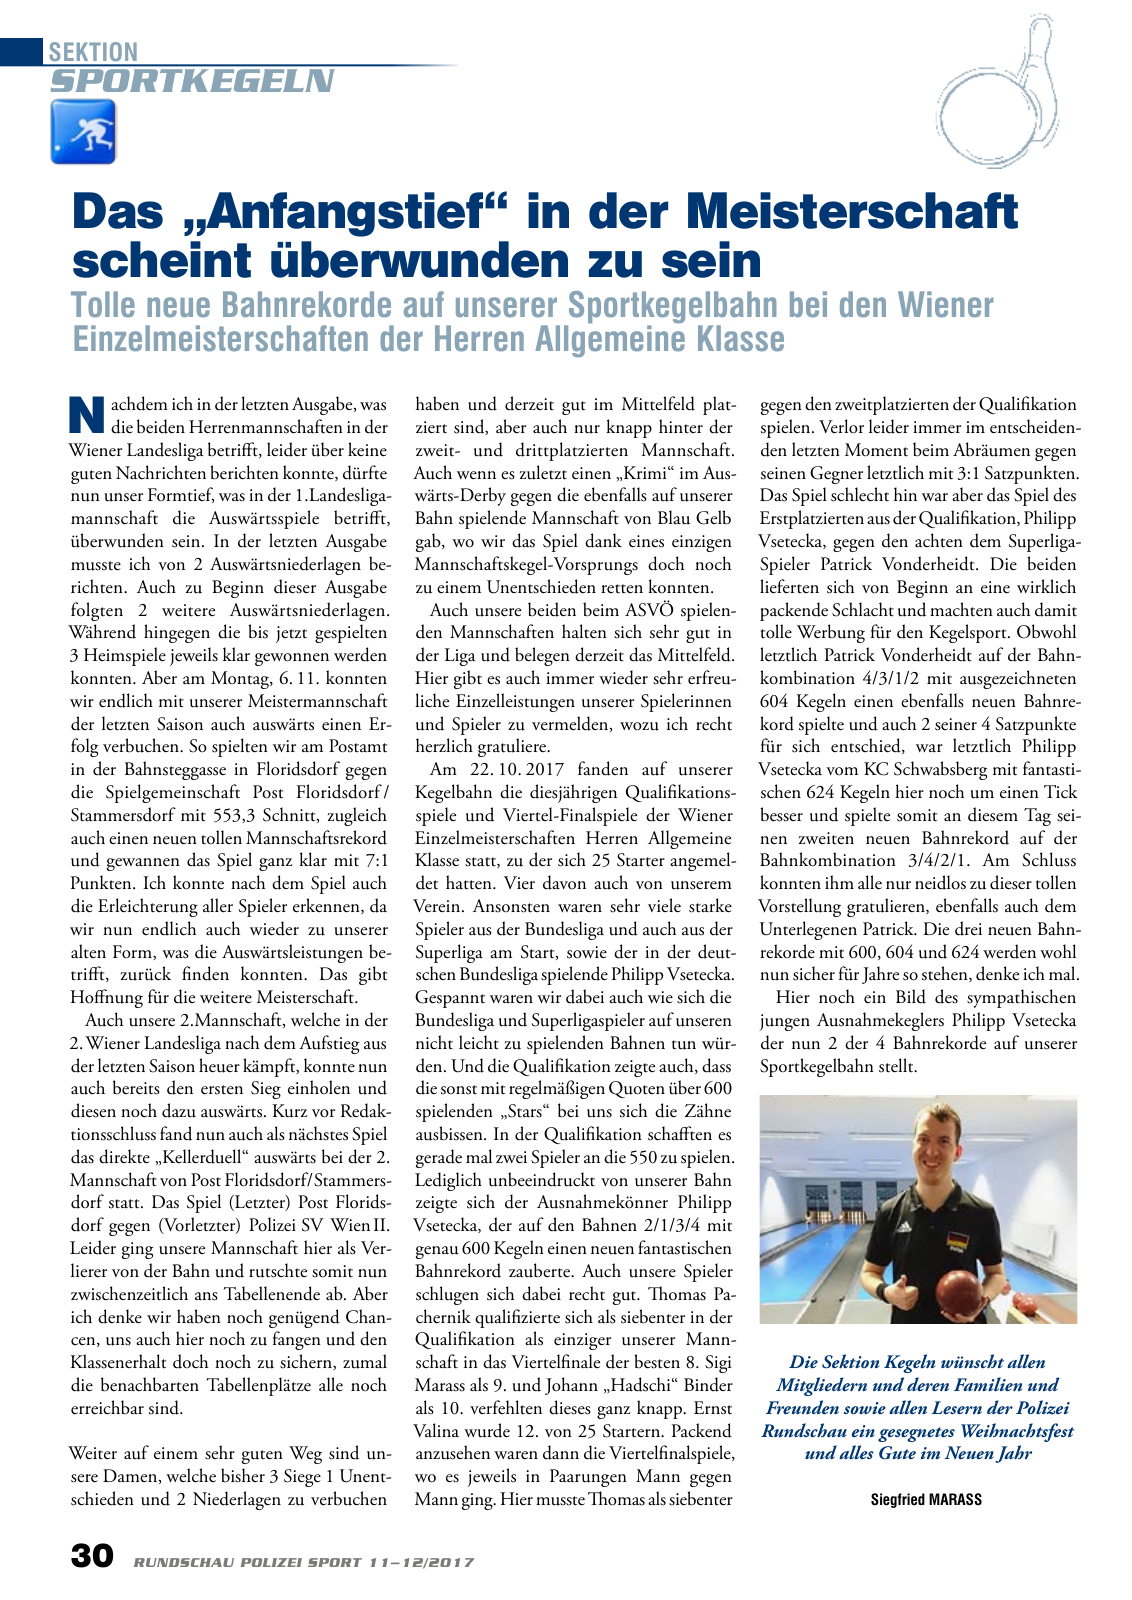 Vorschau Rundschau Polizei Sport 11-12/2017 Seite 30